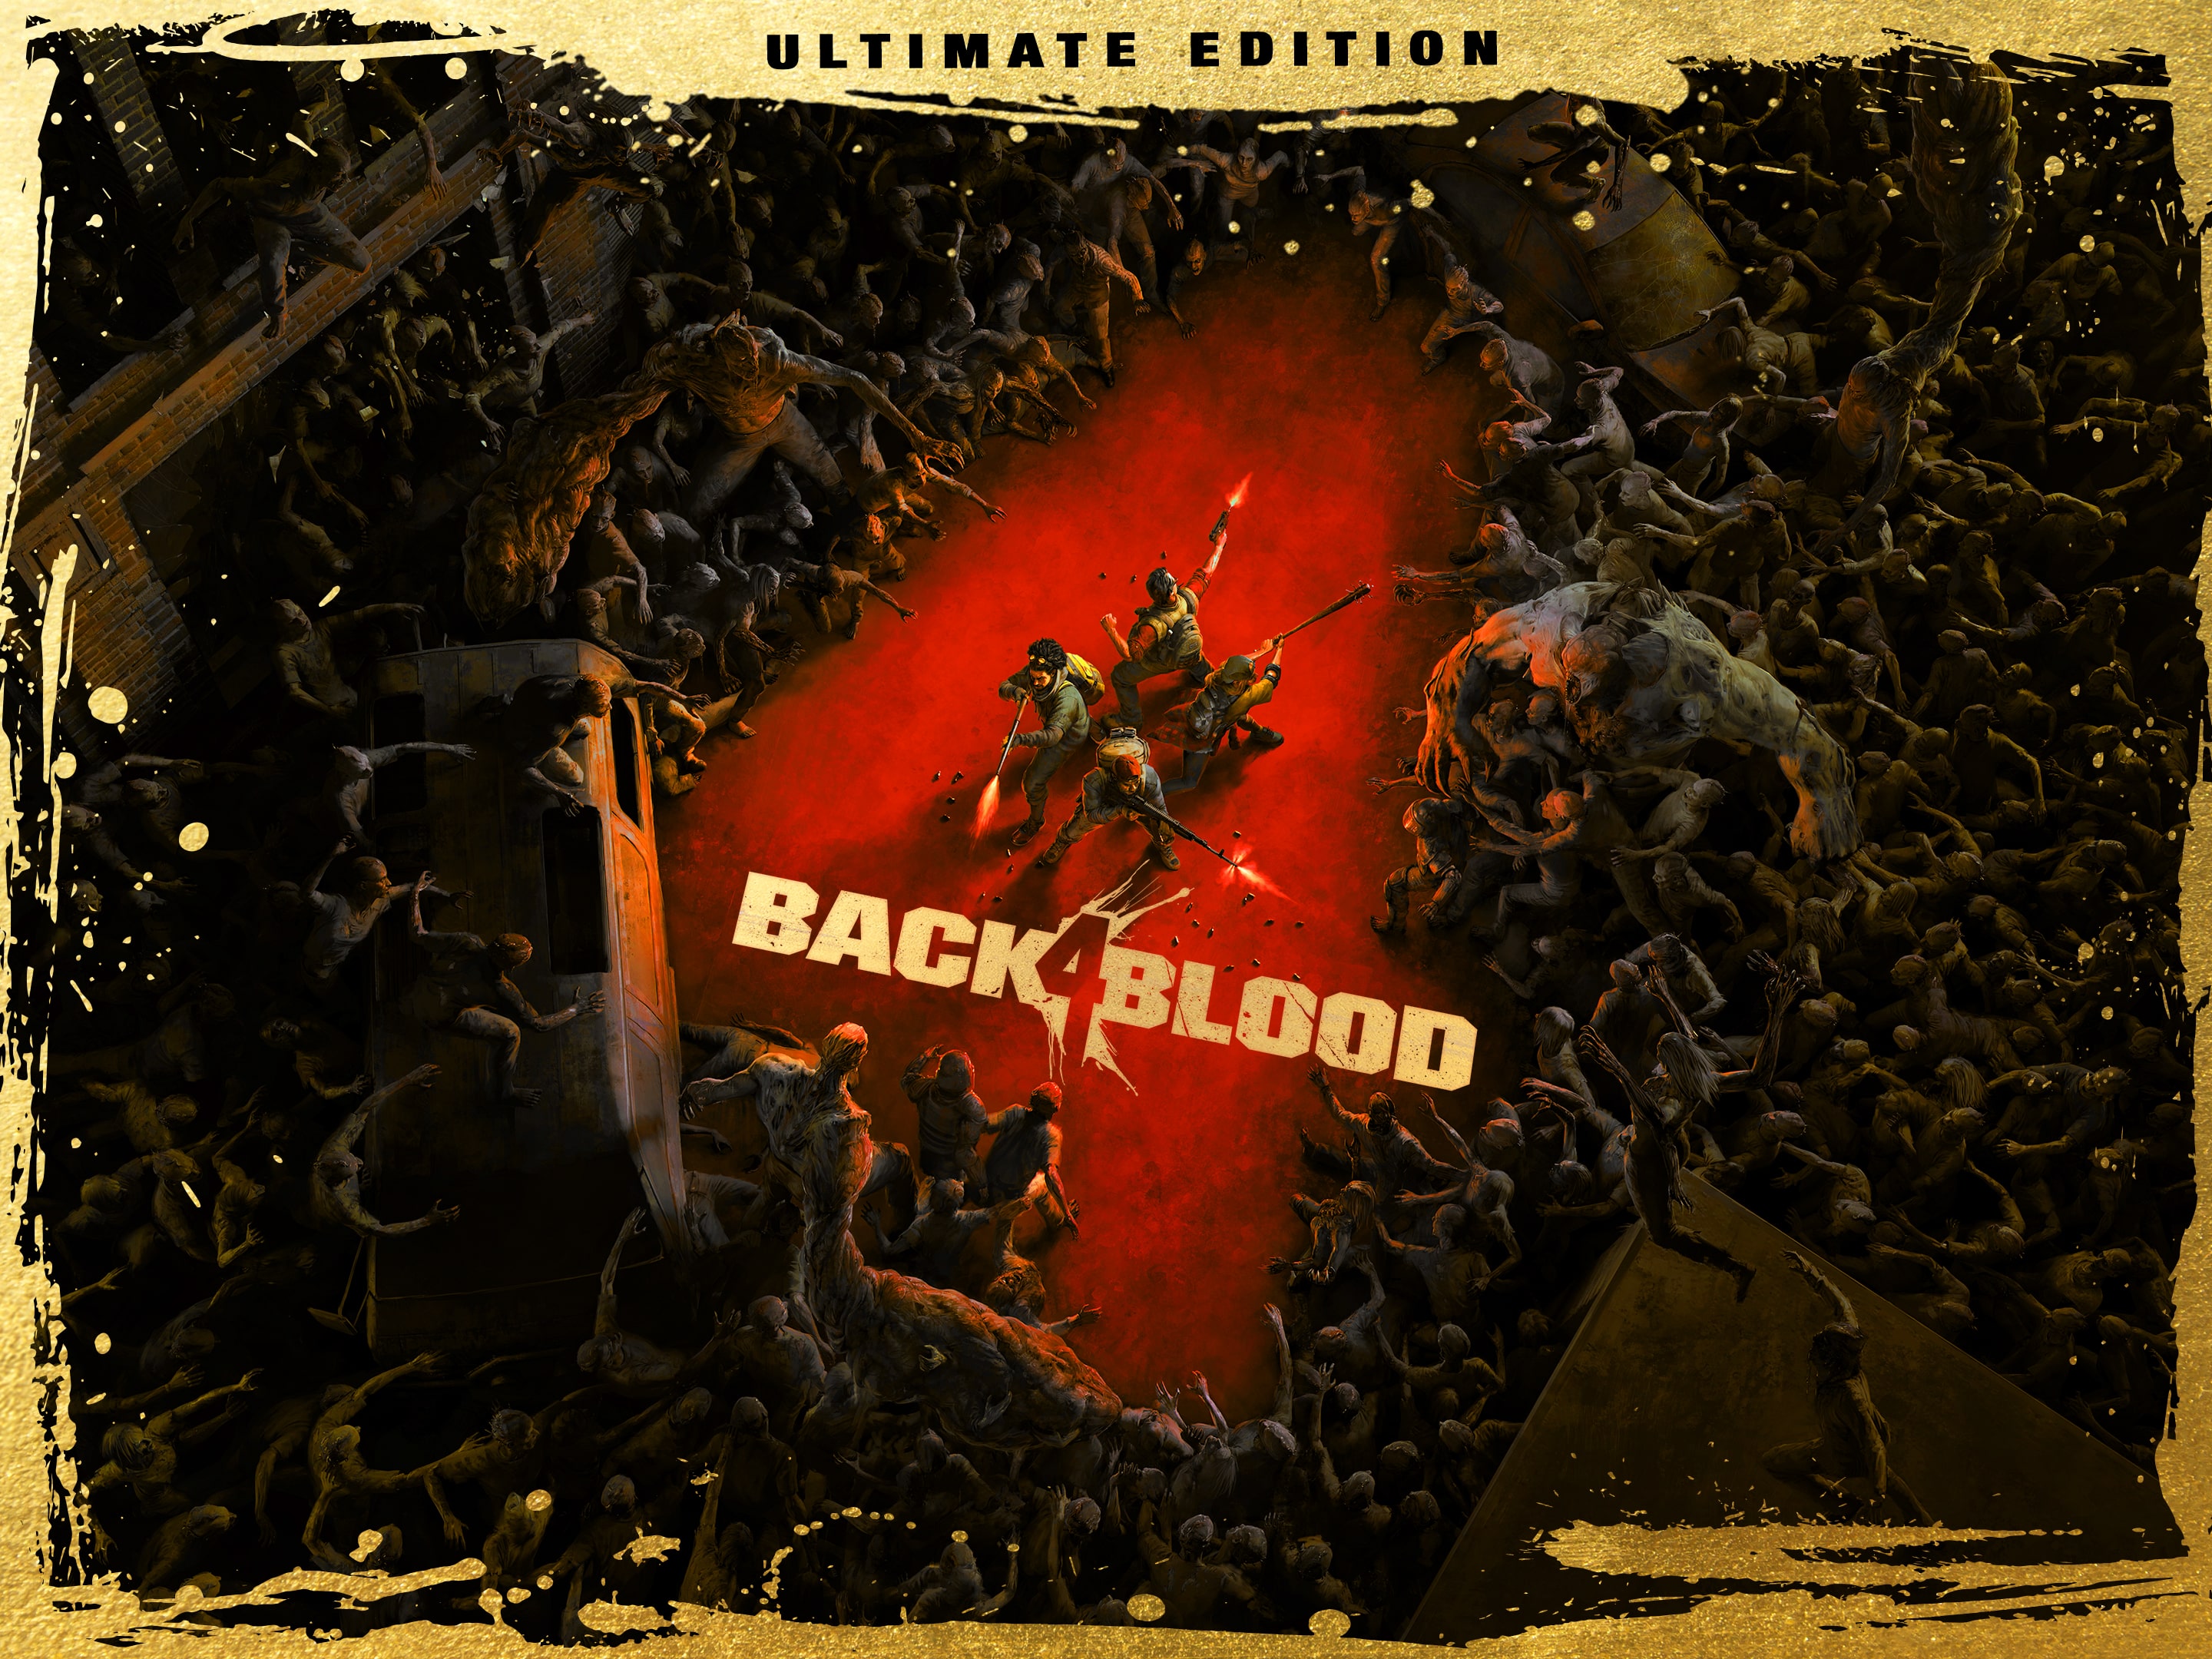 Jogo Back 4 Blood PS5 Turtle Rock Studios com o Melhor Preço é no Zoom